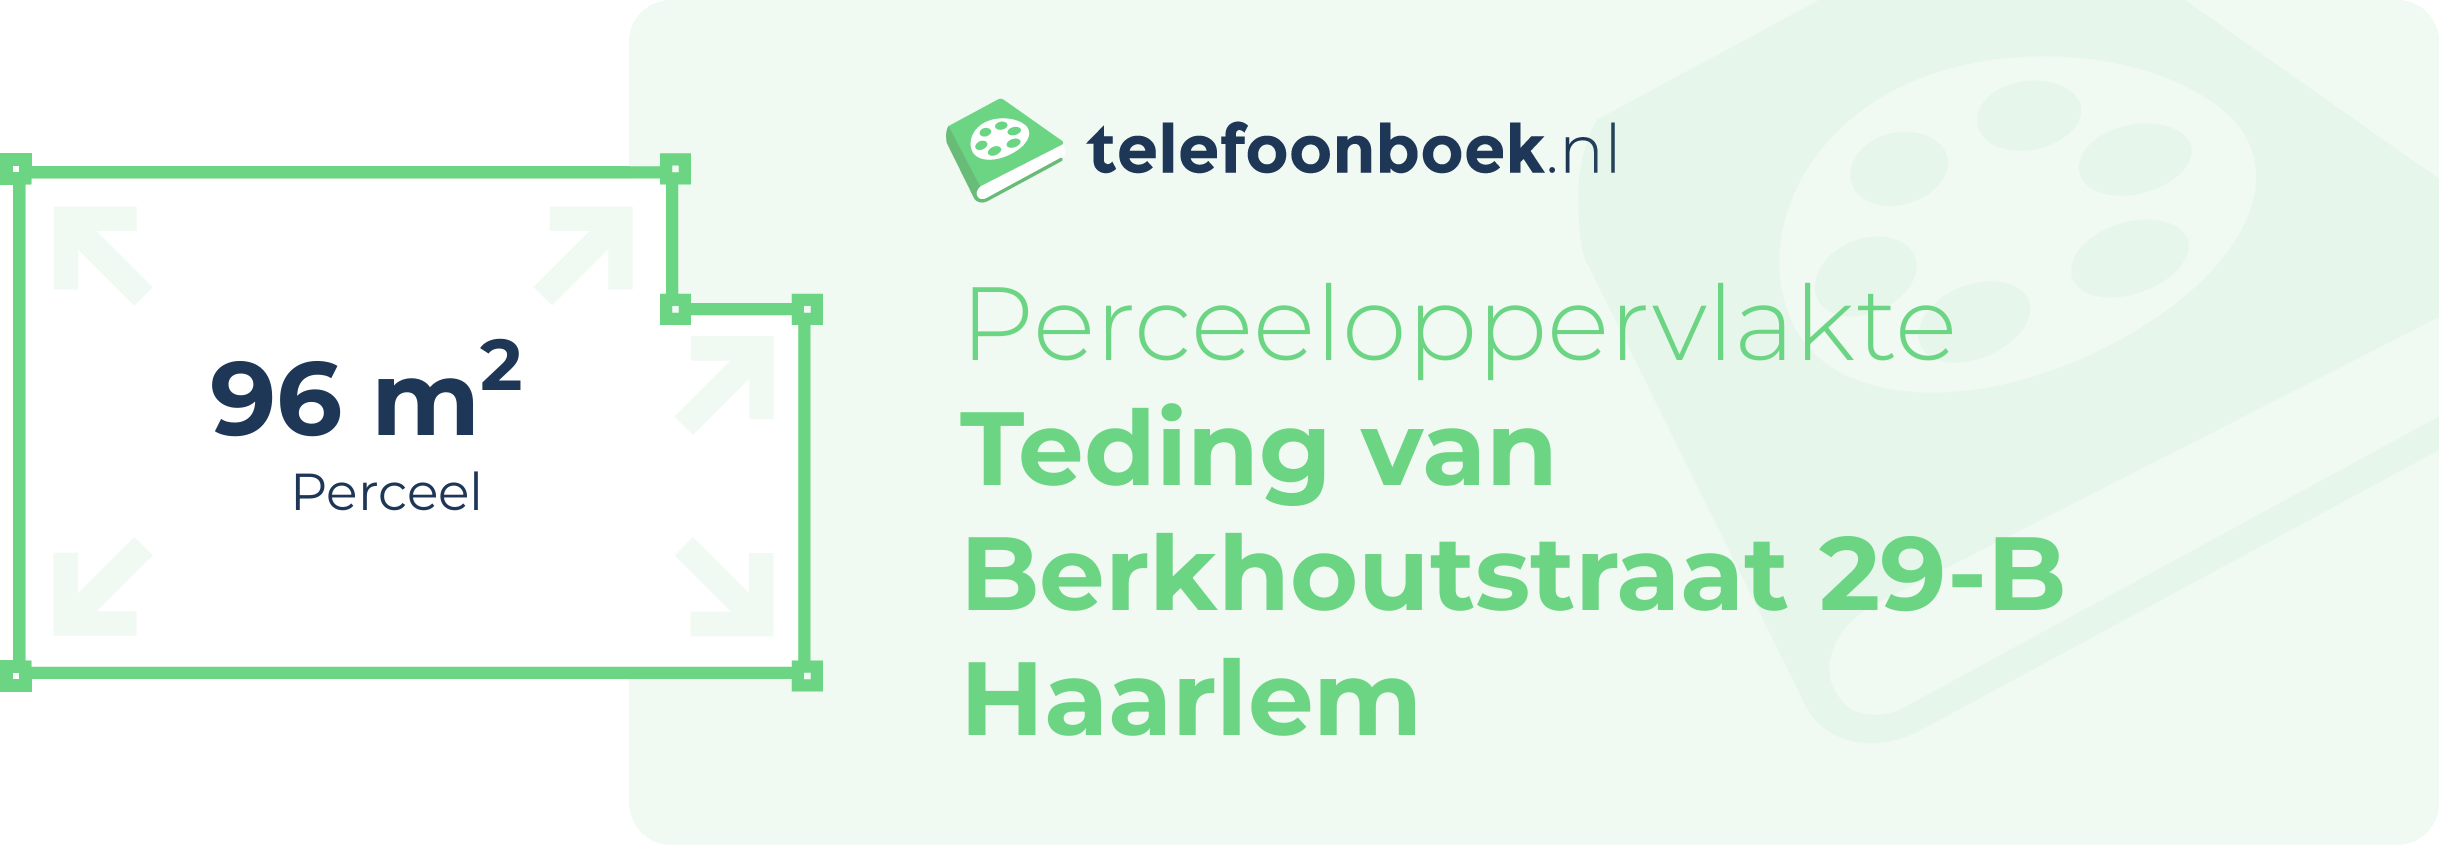 Perceeloppervlakte Teding Van Berkhoutstraat 29-B Haarlem